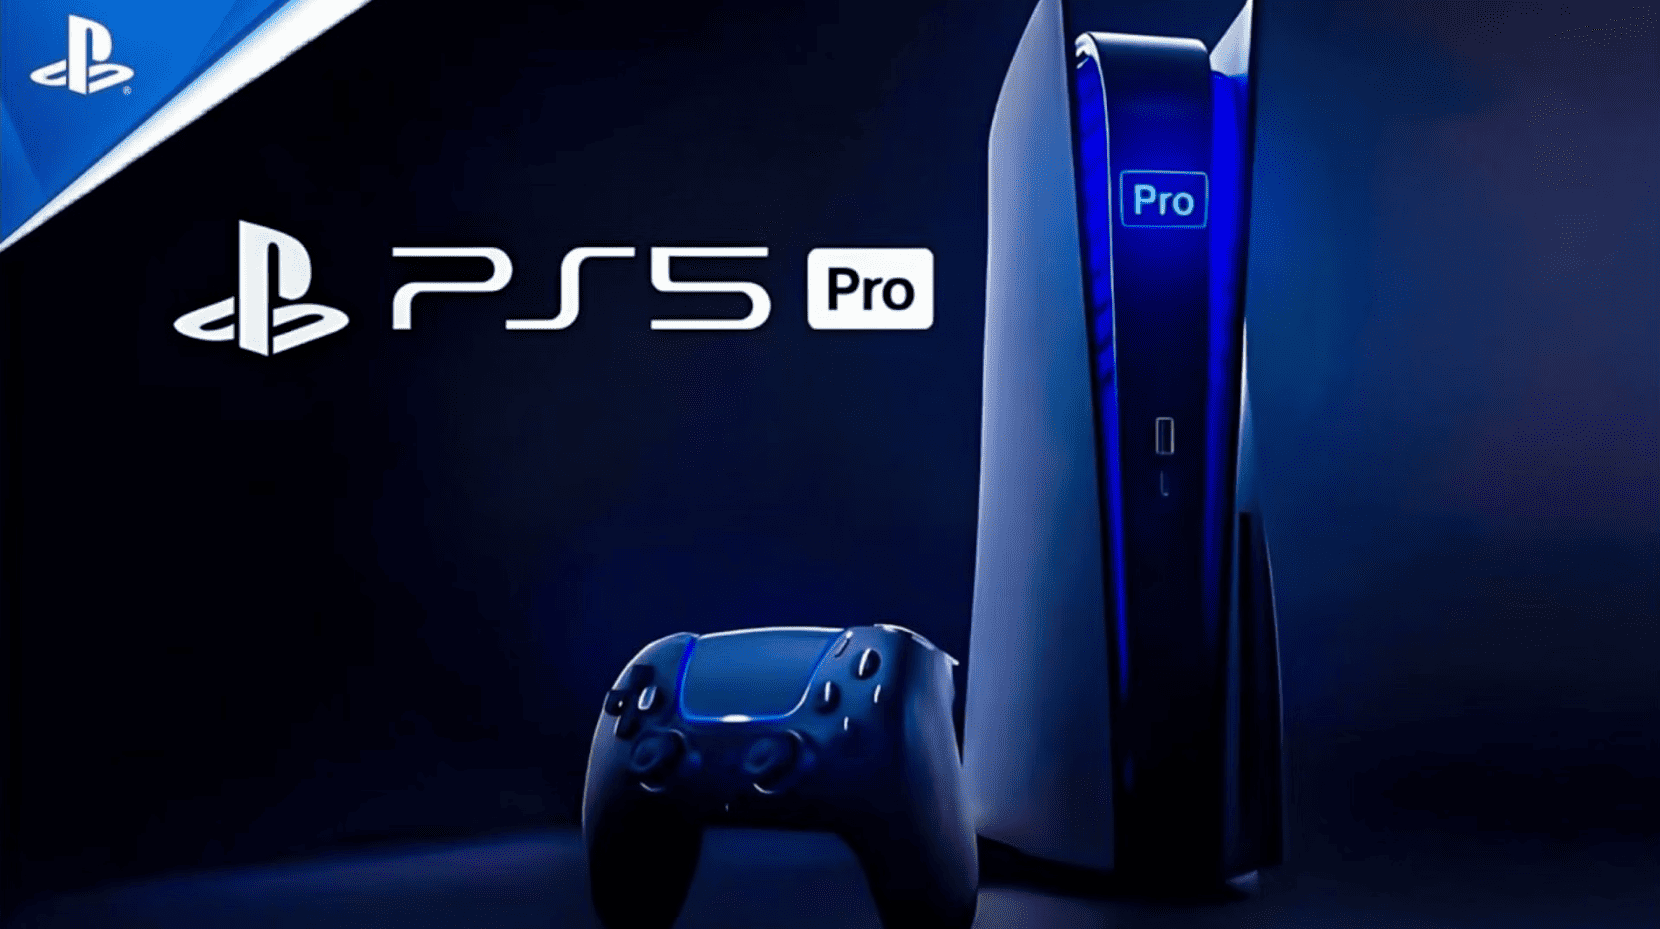 As especulações sobre as especificações e o preço do PS5 Pro